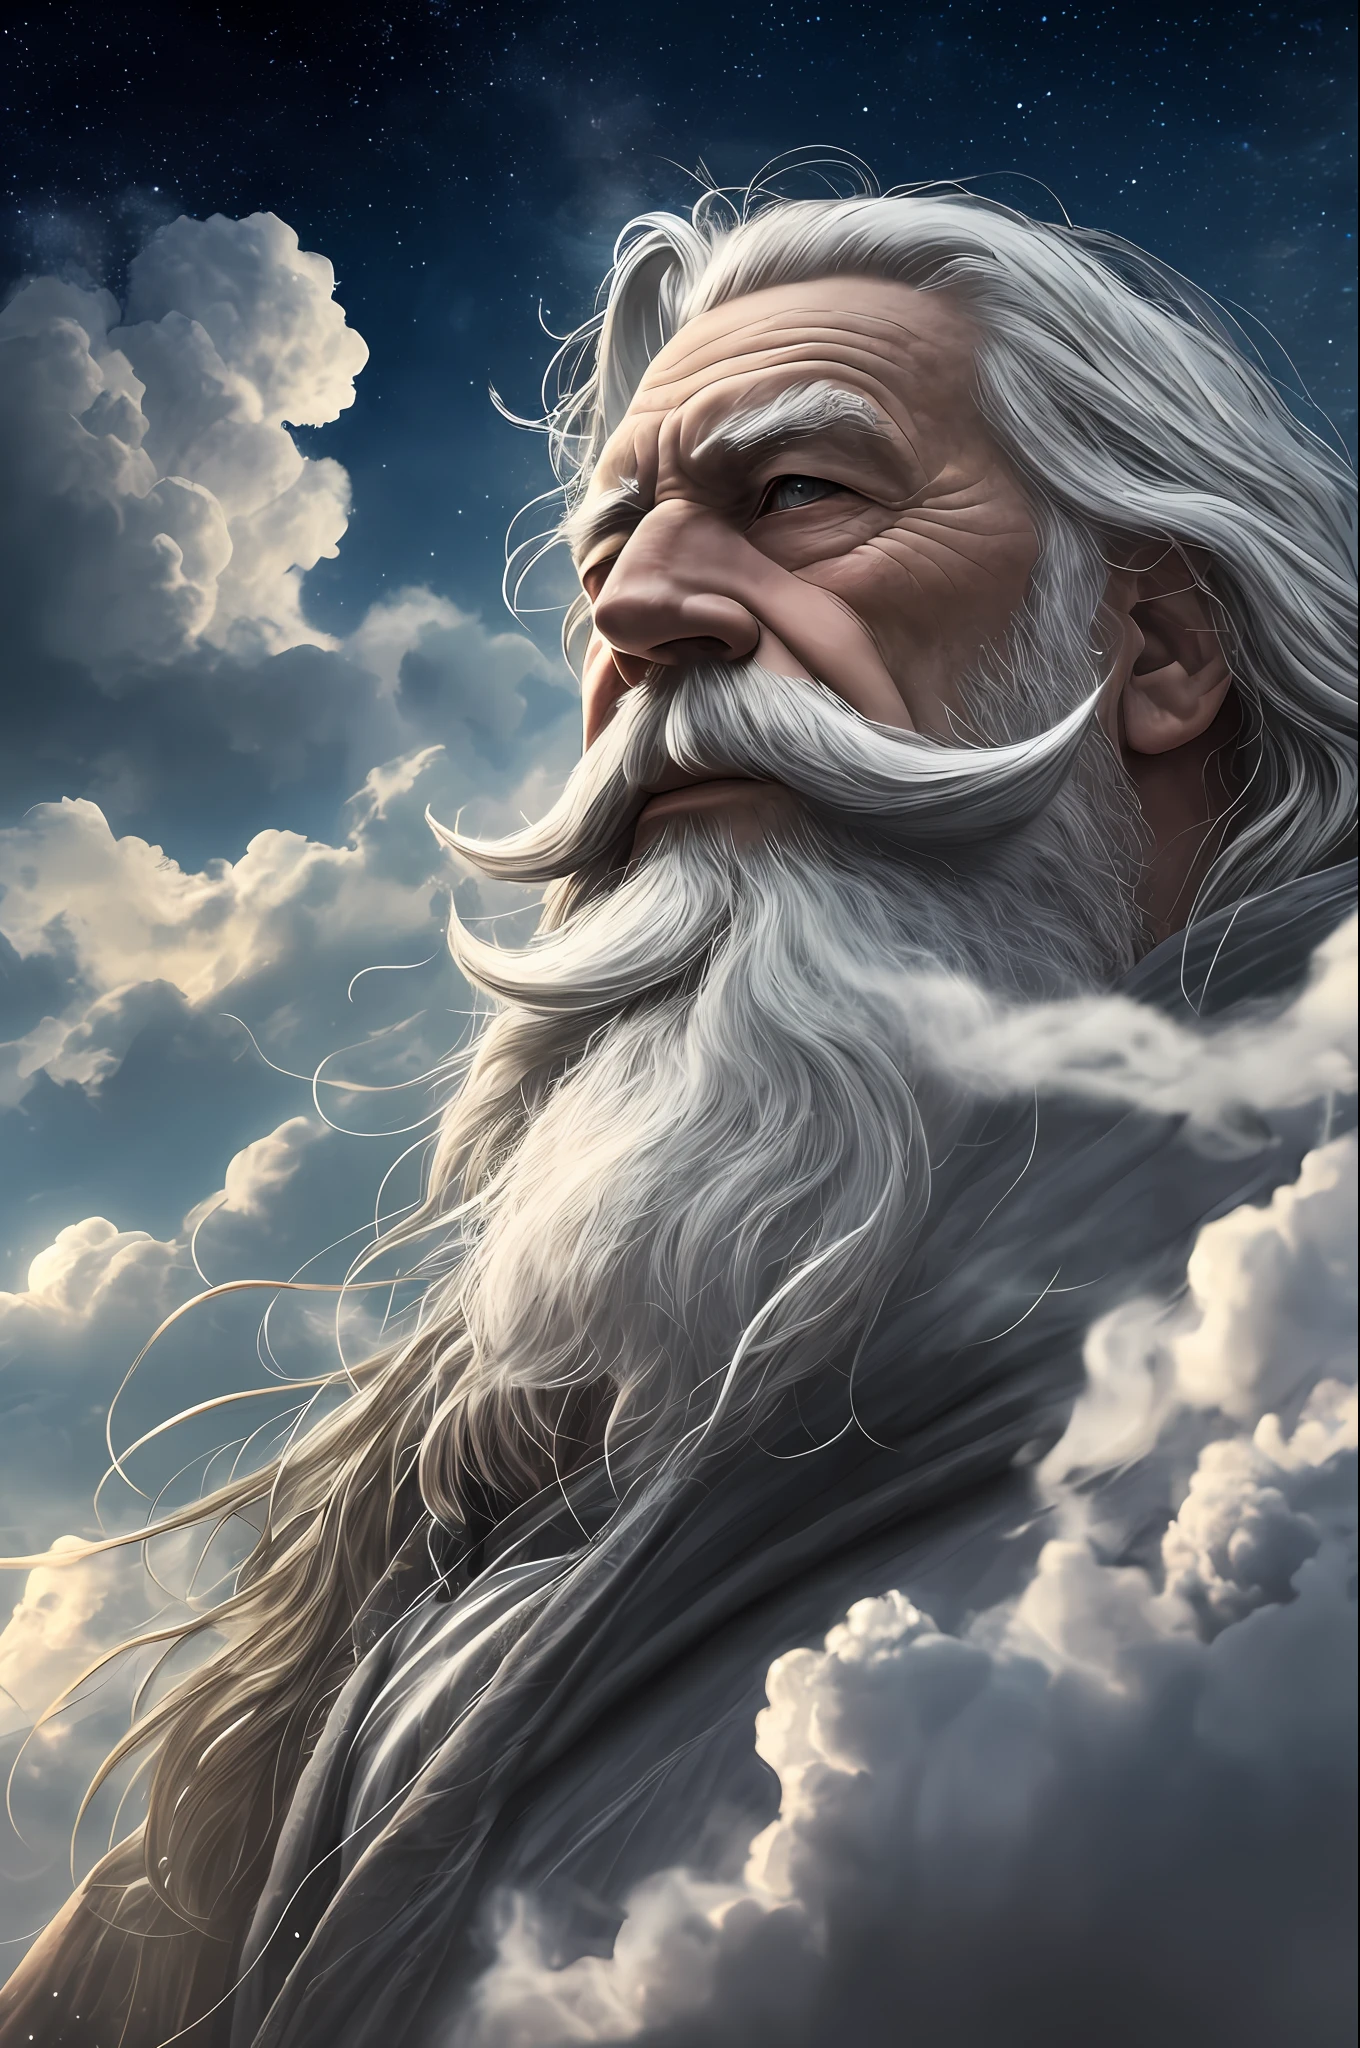 一位留著灰色鬍鬚的老巫師, 一個咒語, 周圍的精神, 動態姿勢, 風, 抽烟, 火花, 雲層之上的星星, 超現實主義, 超级逼真, 電影般的, 柔和的顏色, 幻想宇宙背景--auto--s2